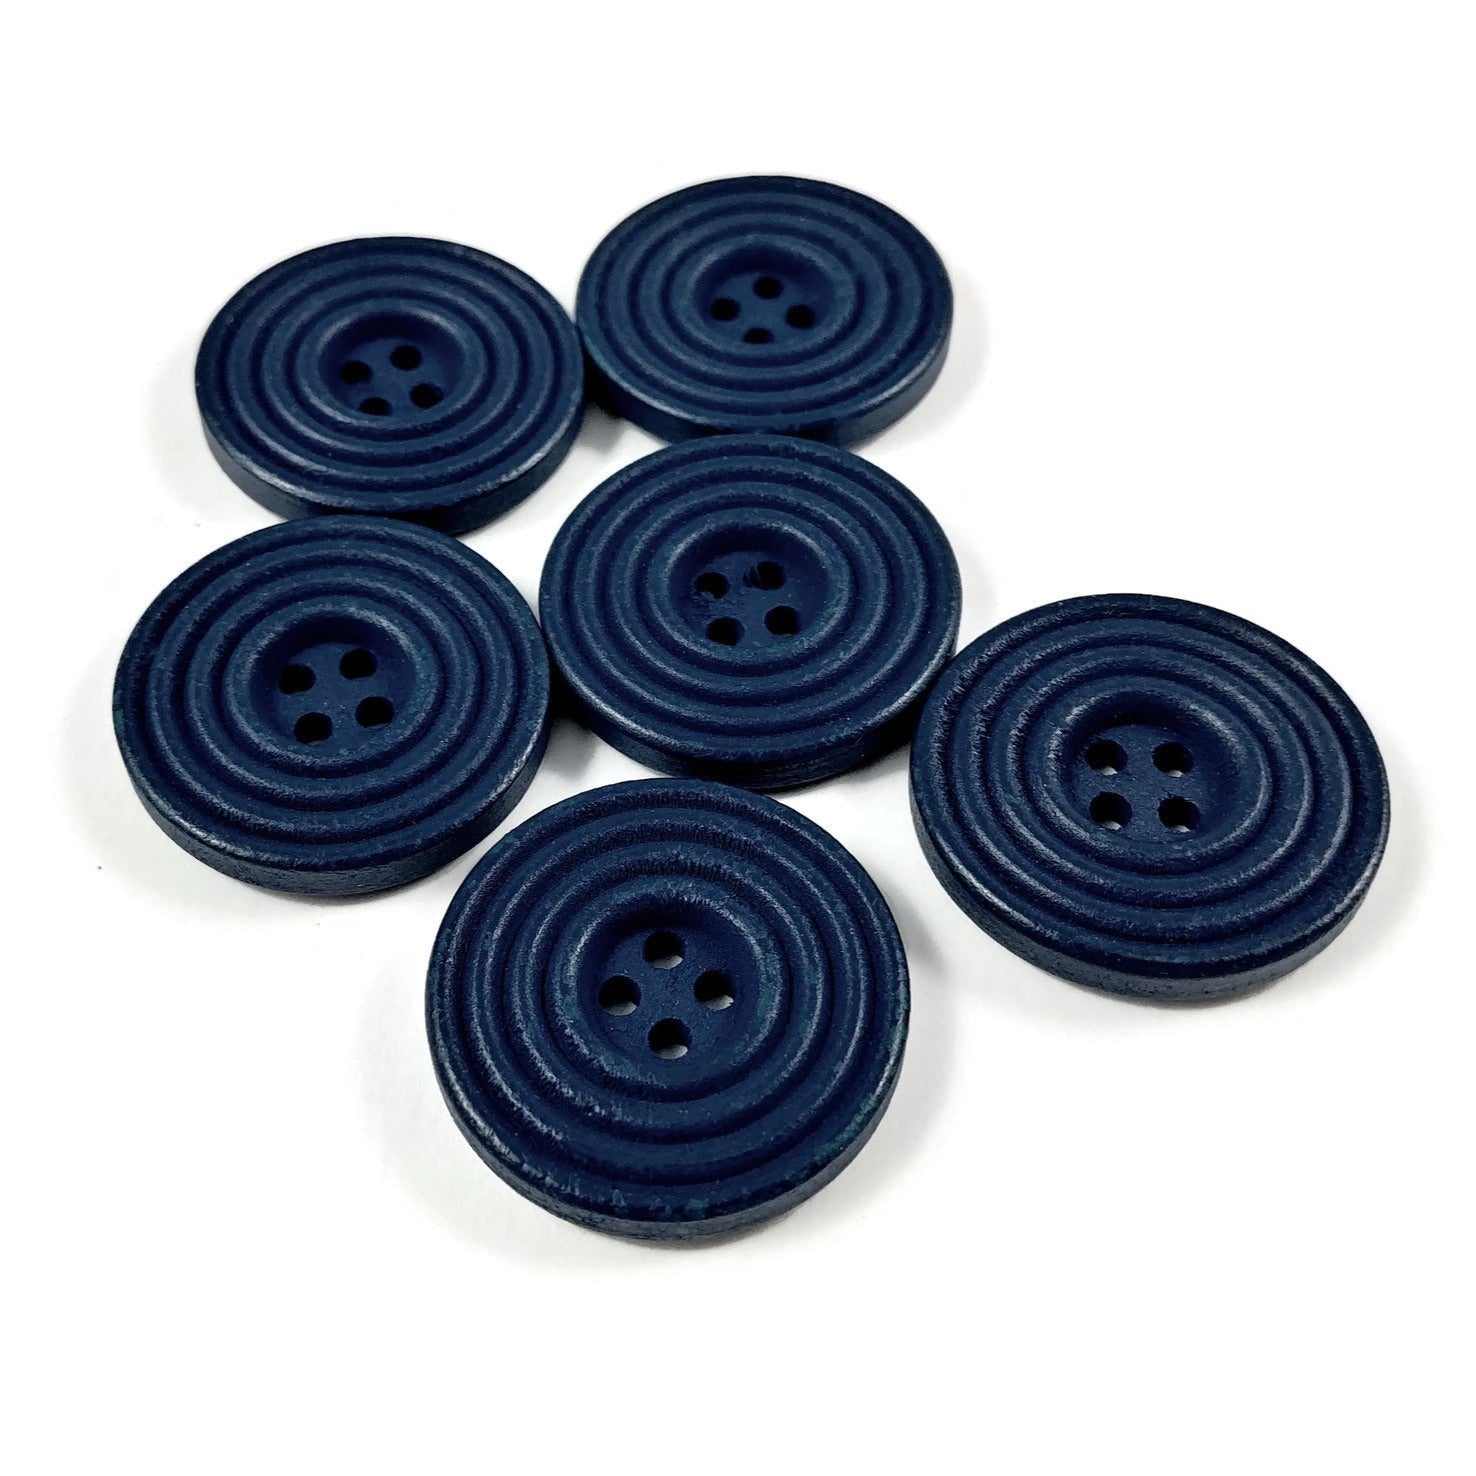 Bouton de bois de 25mm - ensemble de 6 boutons en bois naturel avec cercles